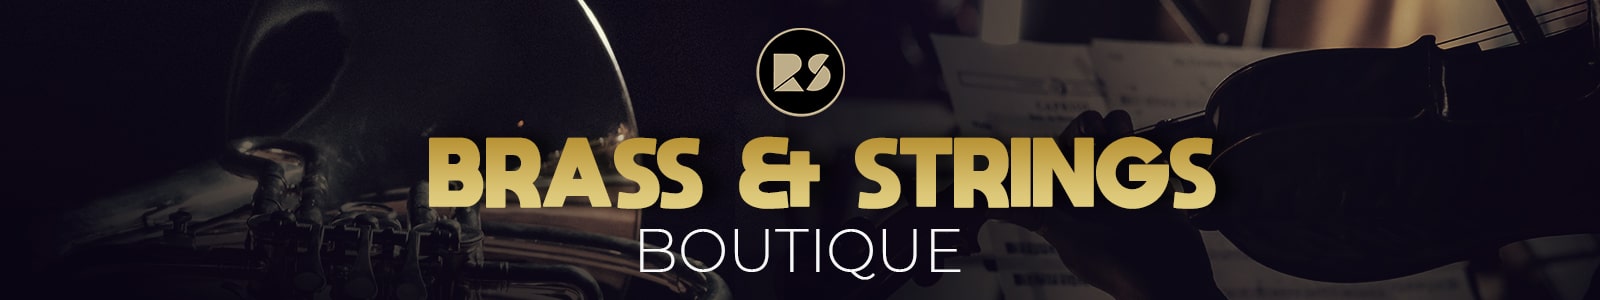 string & brass boutique